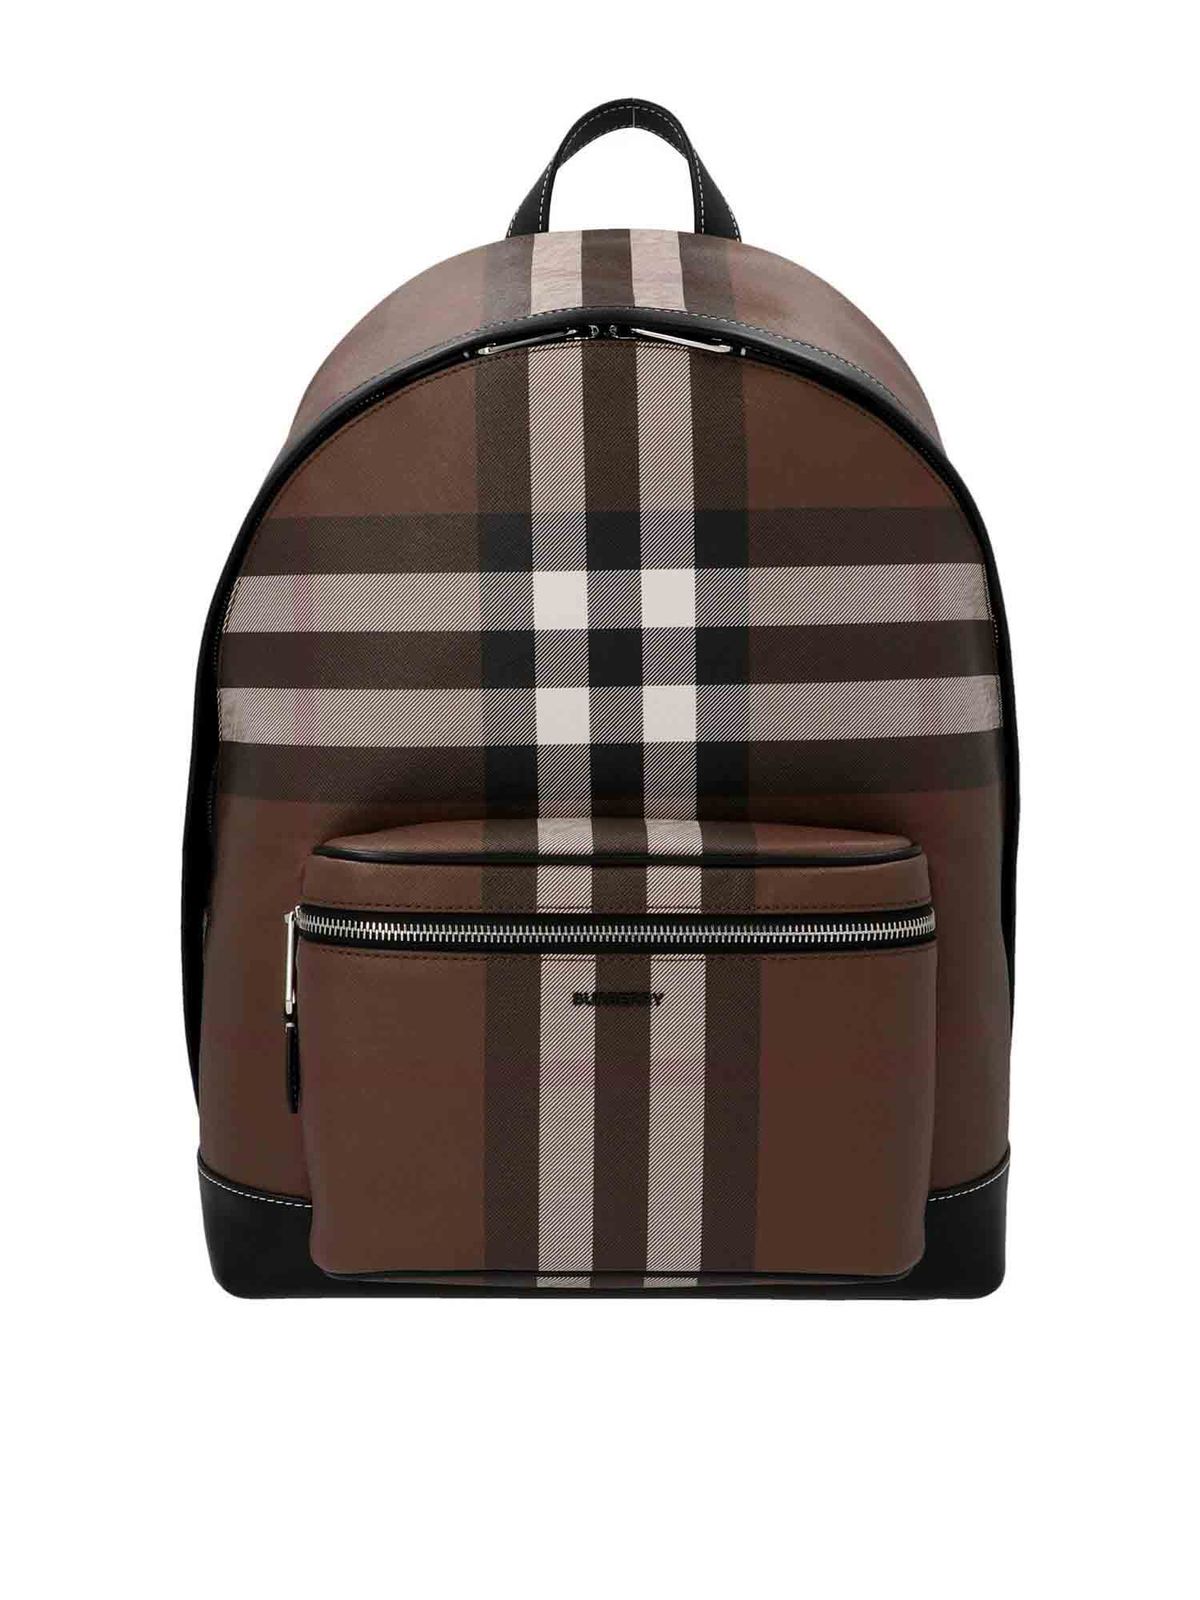 Burberry - Tartan e-canvas backpack - backpacks - 8036549 | iKRIX.com